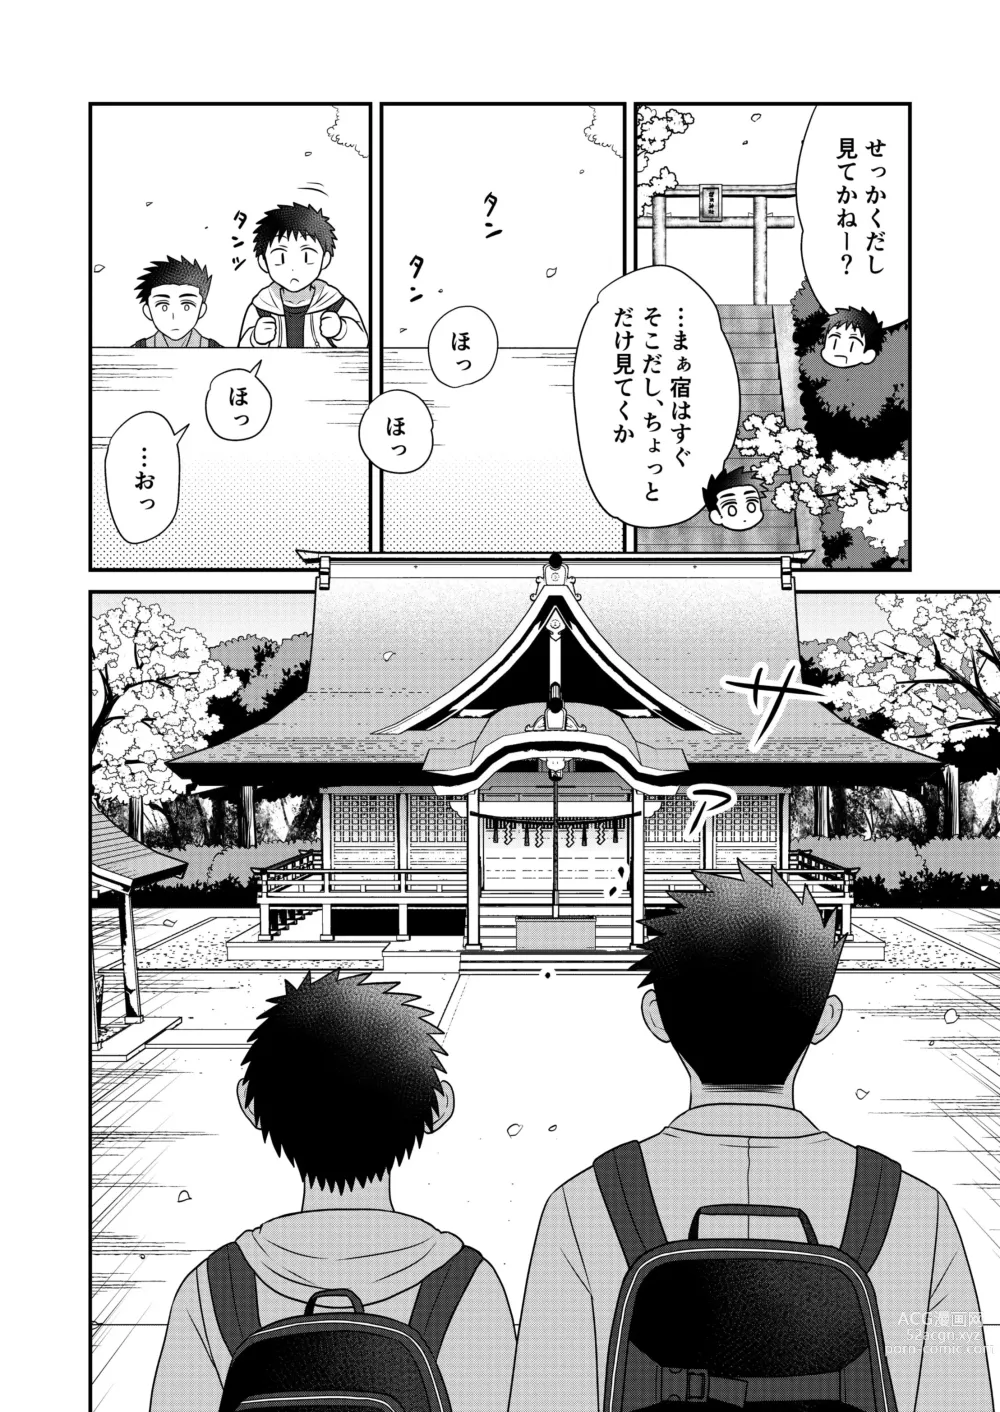 Page 10 of doujinshi Hayatochiri BL Sakura Mau Onsen Ryokou no Hanashi.